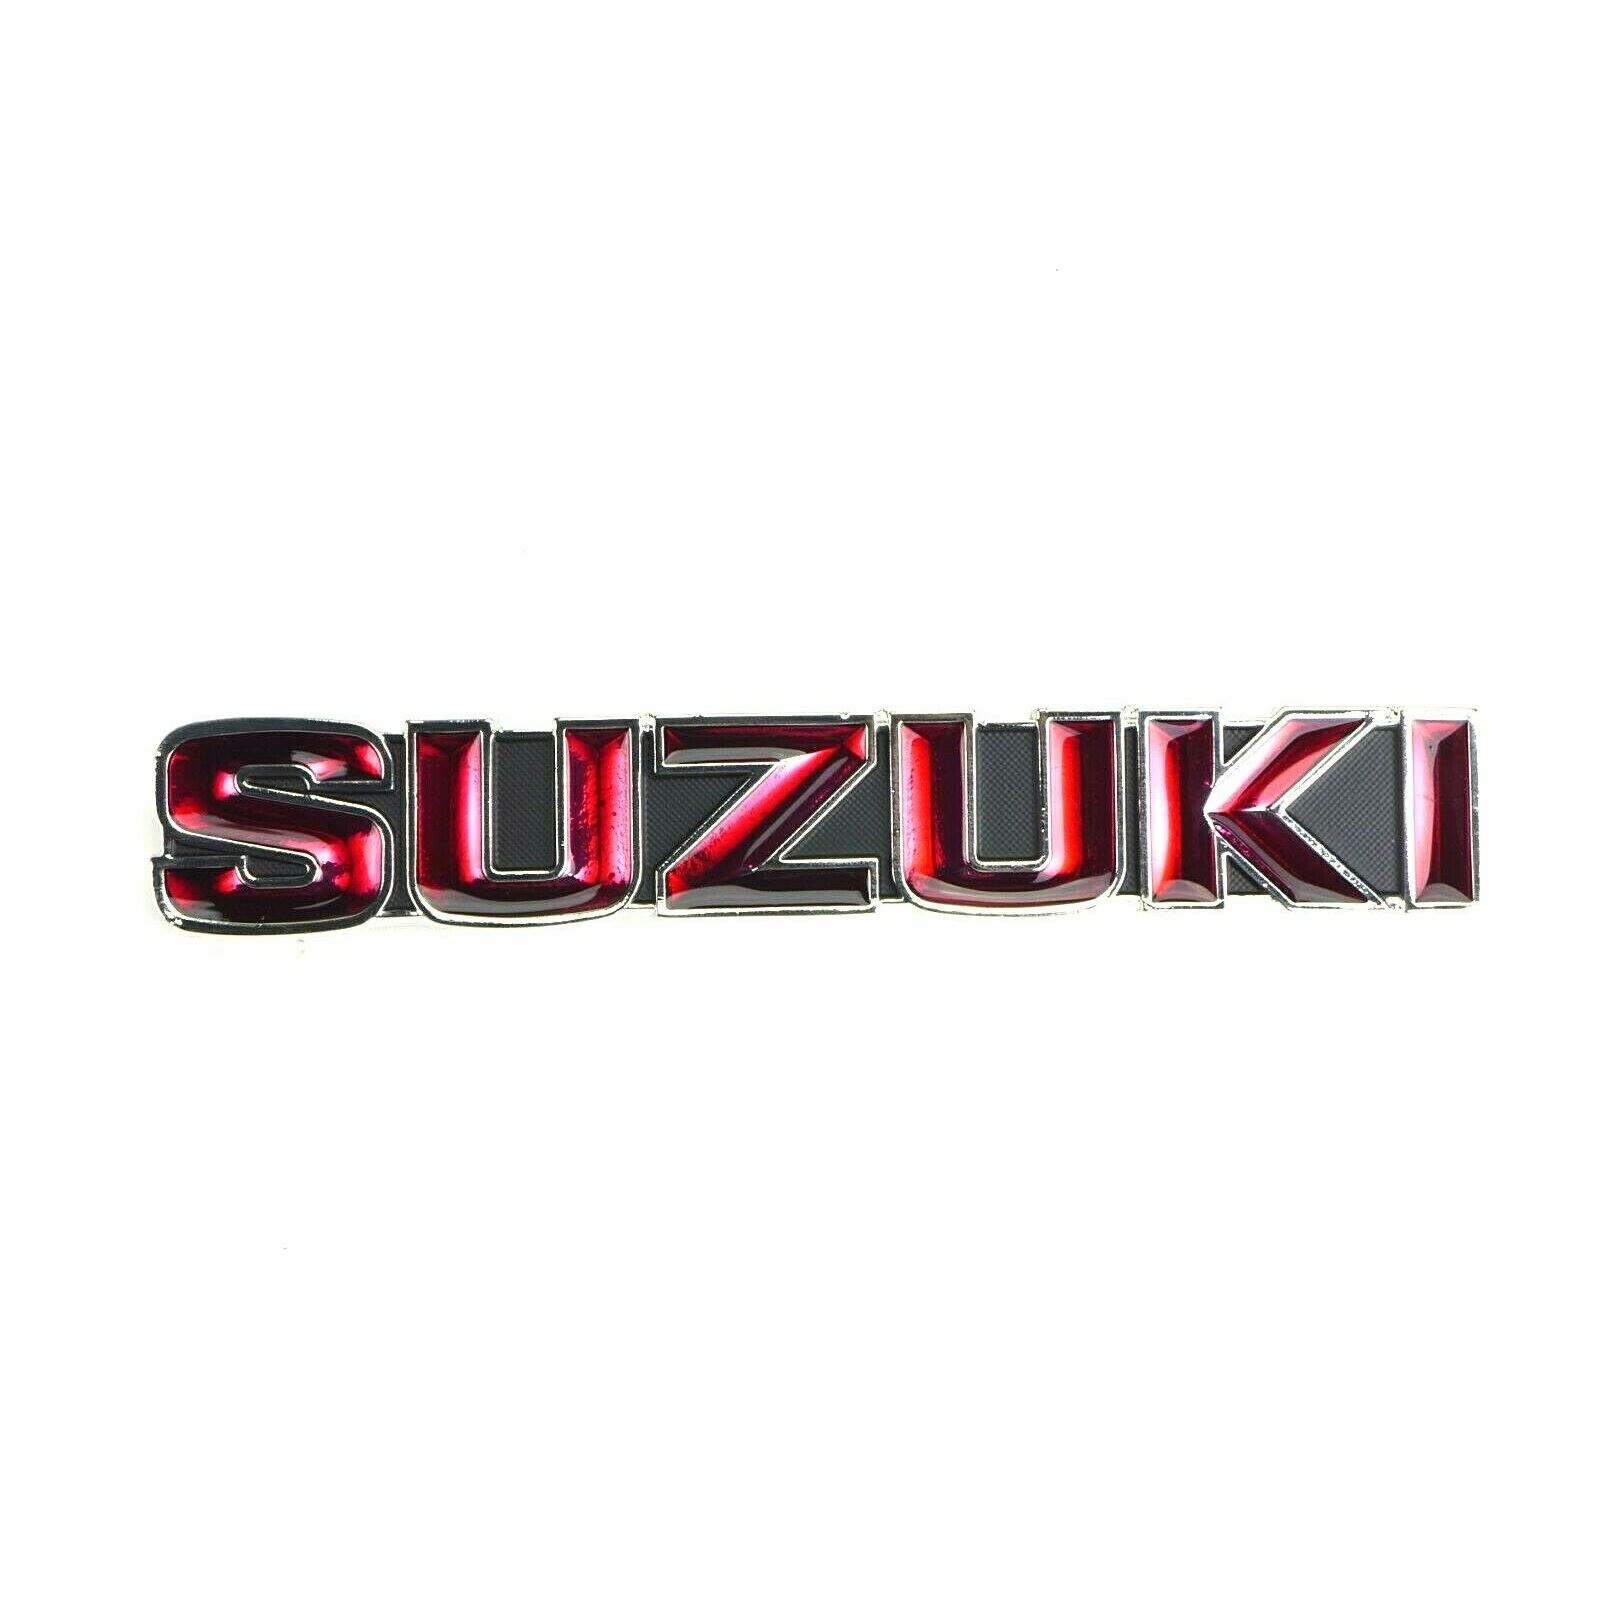 Bike Icon: Suzuki GT750